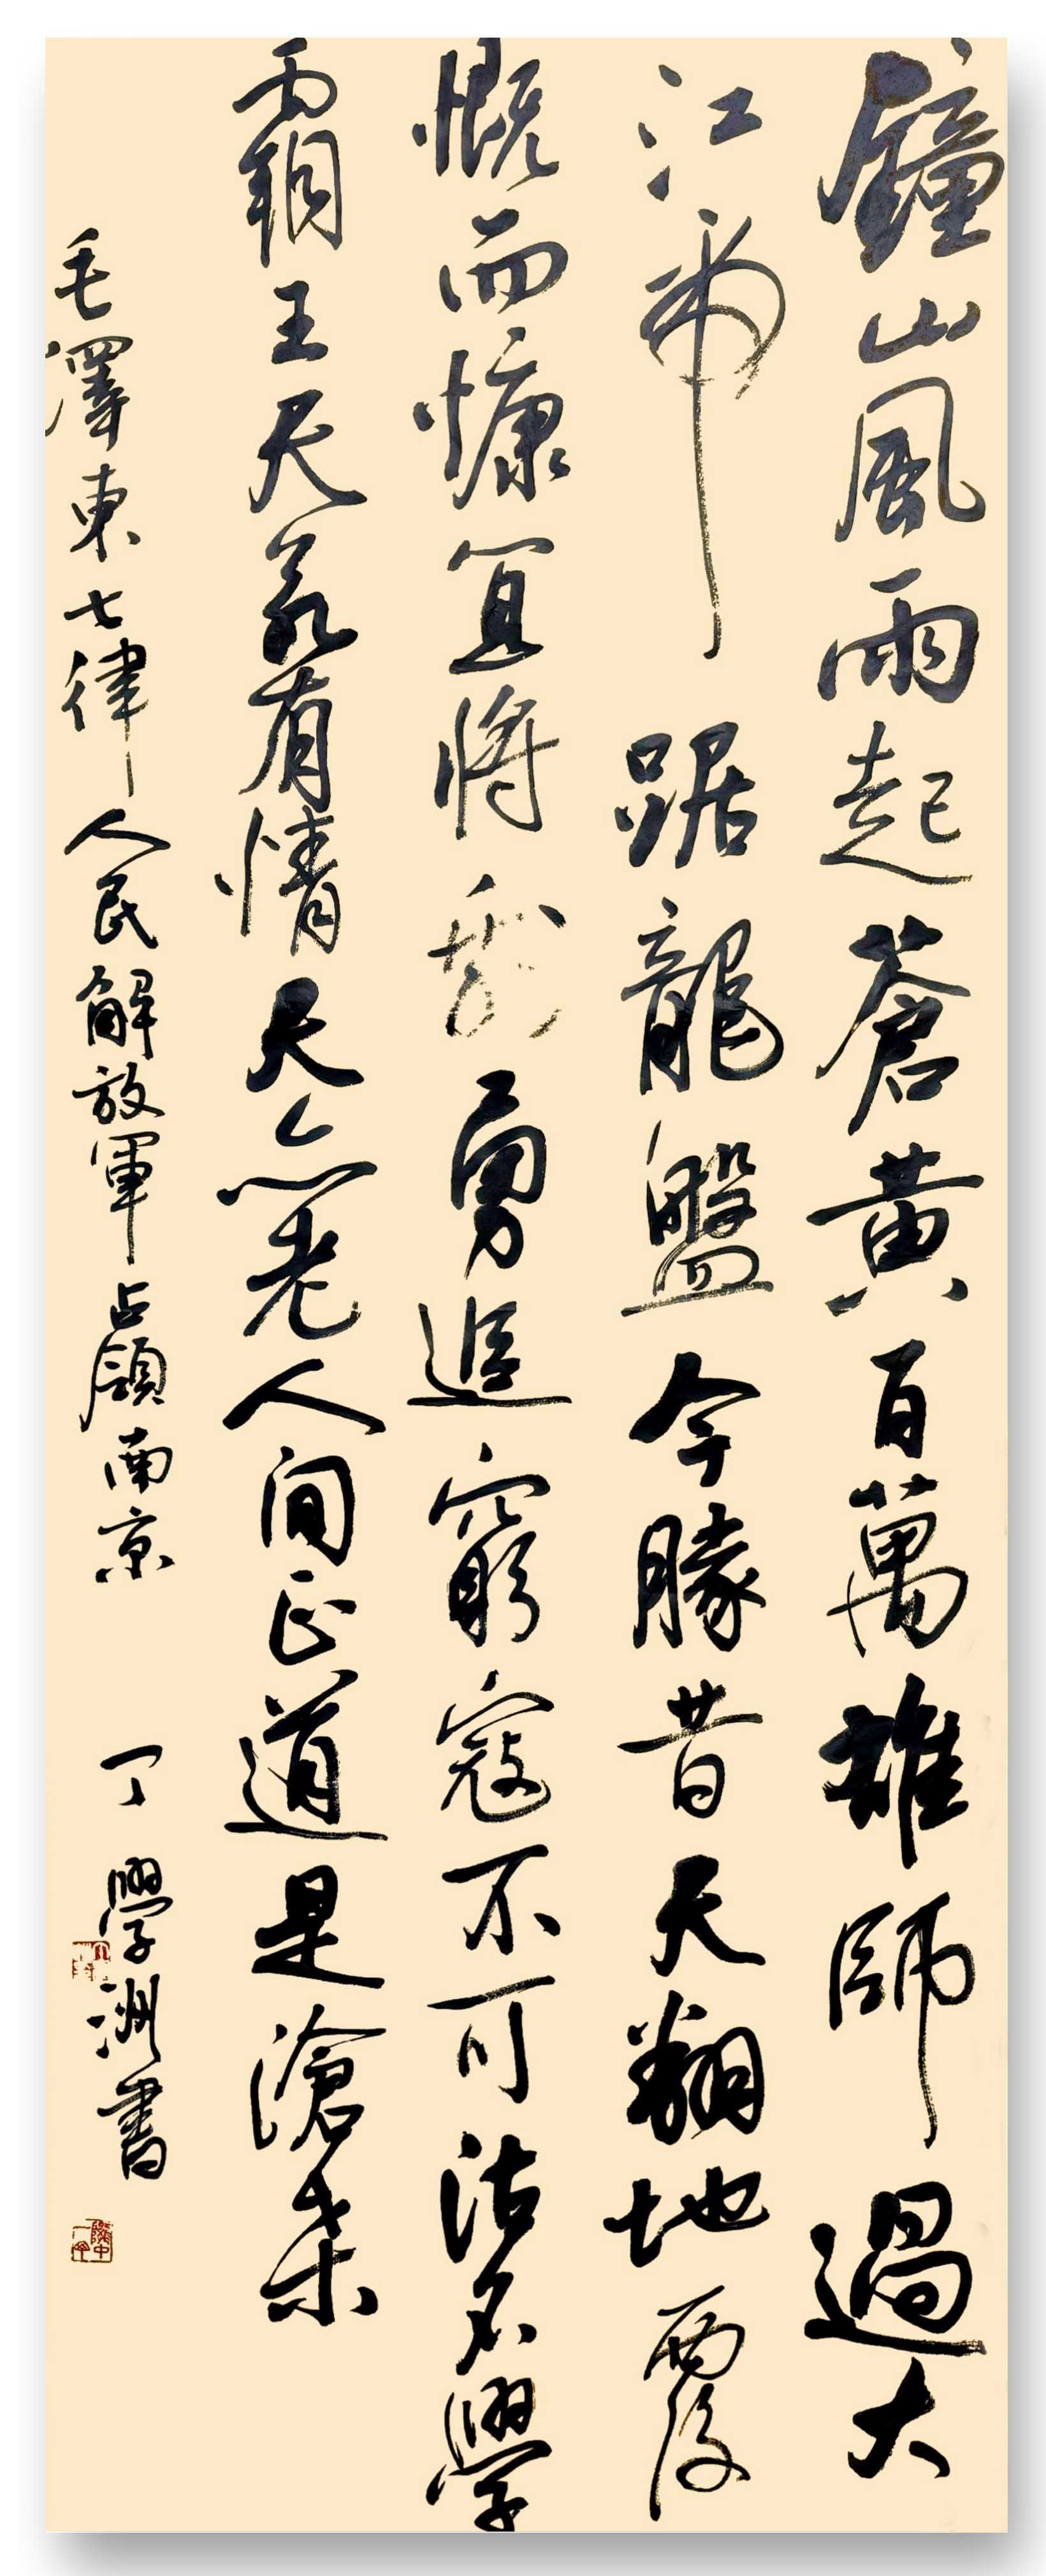 《飞龙在天 浓情端午》海内外华人艺术家共庆佳节书画展(图396)